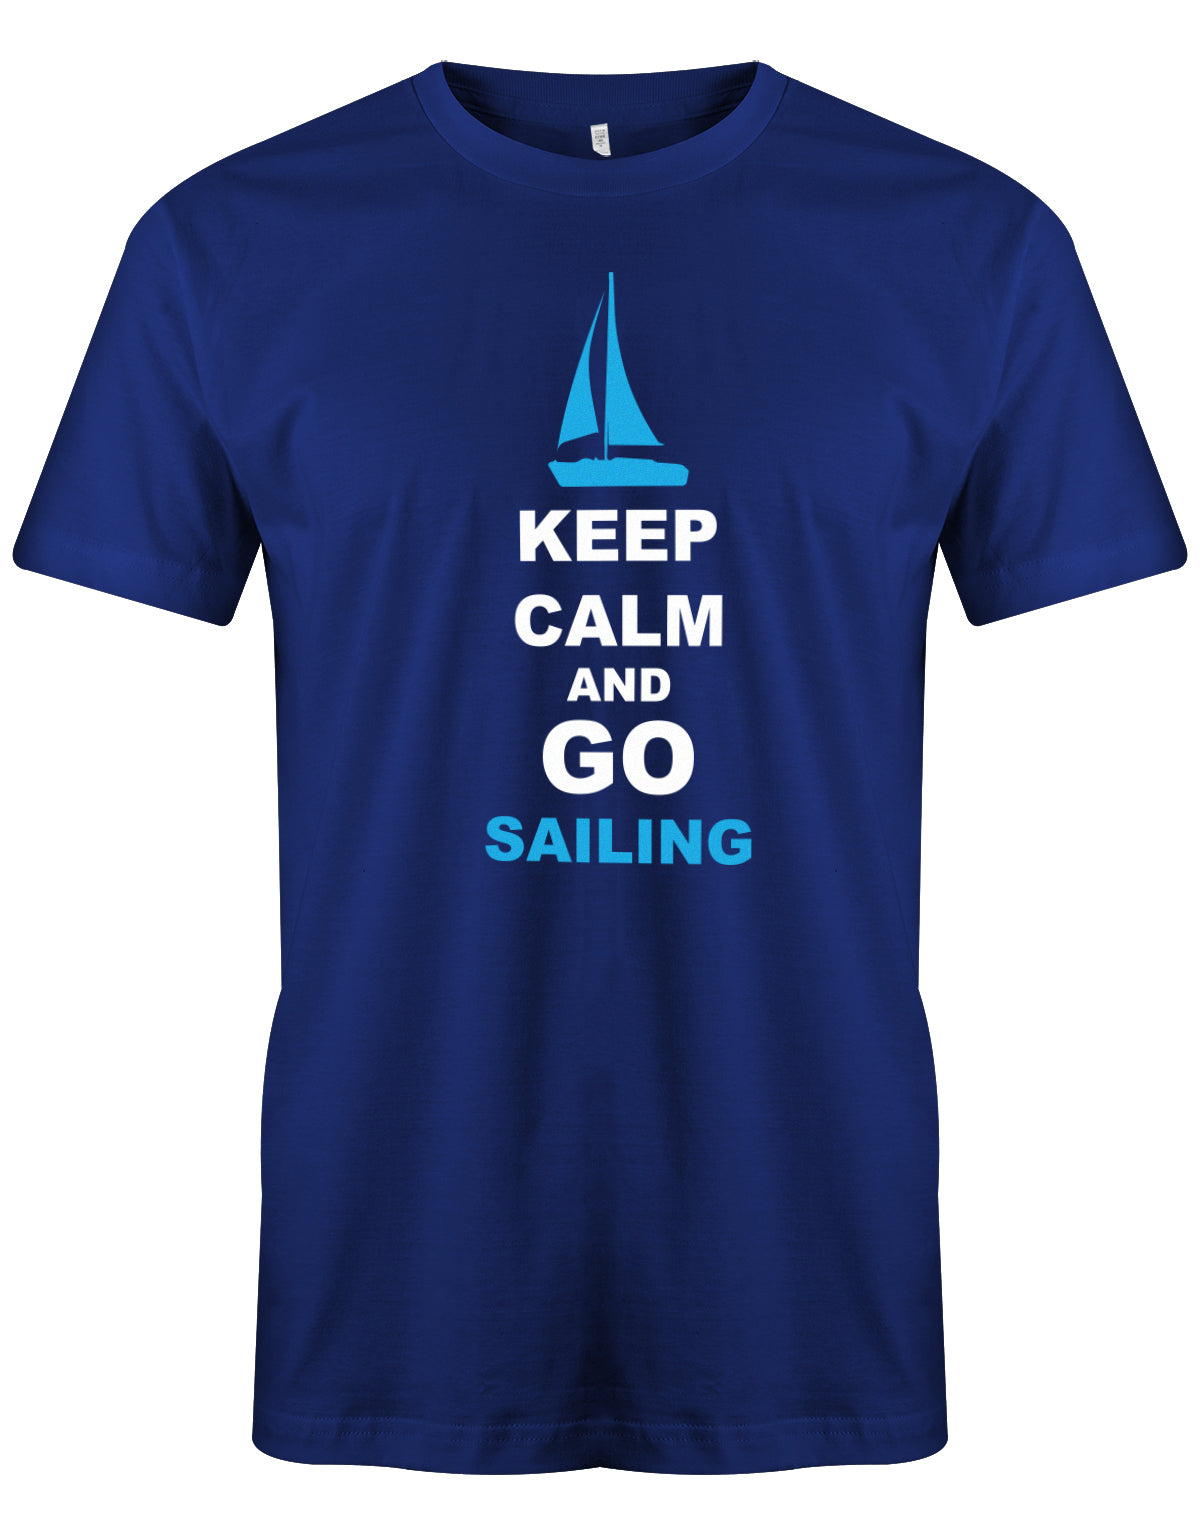 Das Segler t-shirt bedruckt mit "Keep Calm and go sailing - Bleiben Sie ruhig und gehen segeln". Royalblau